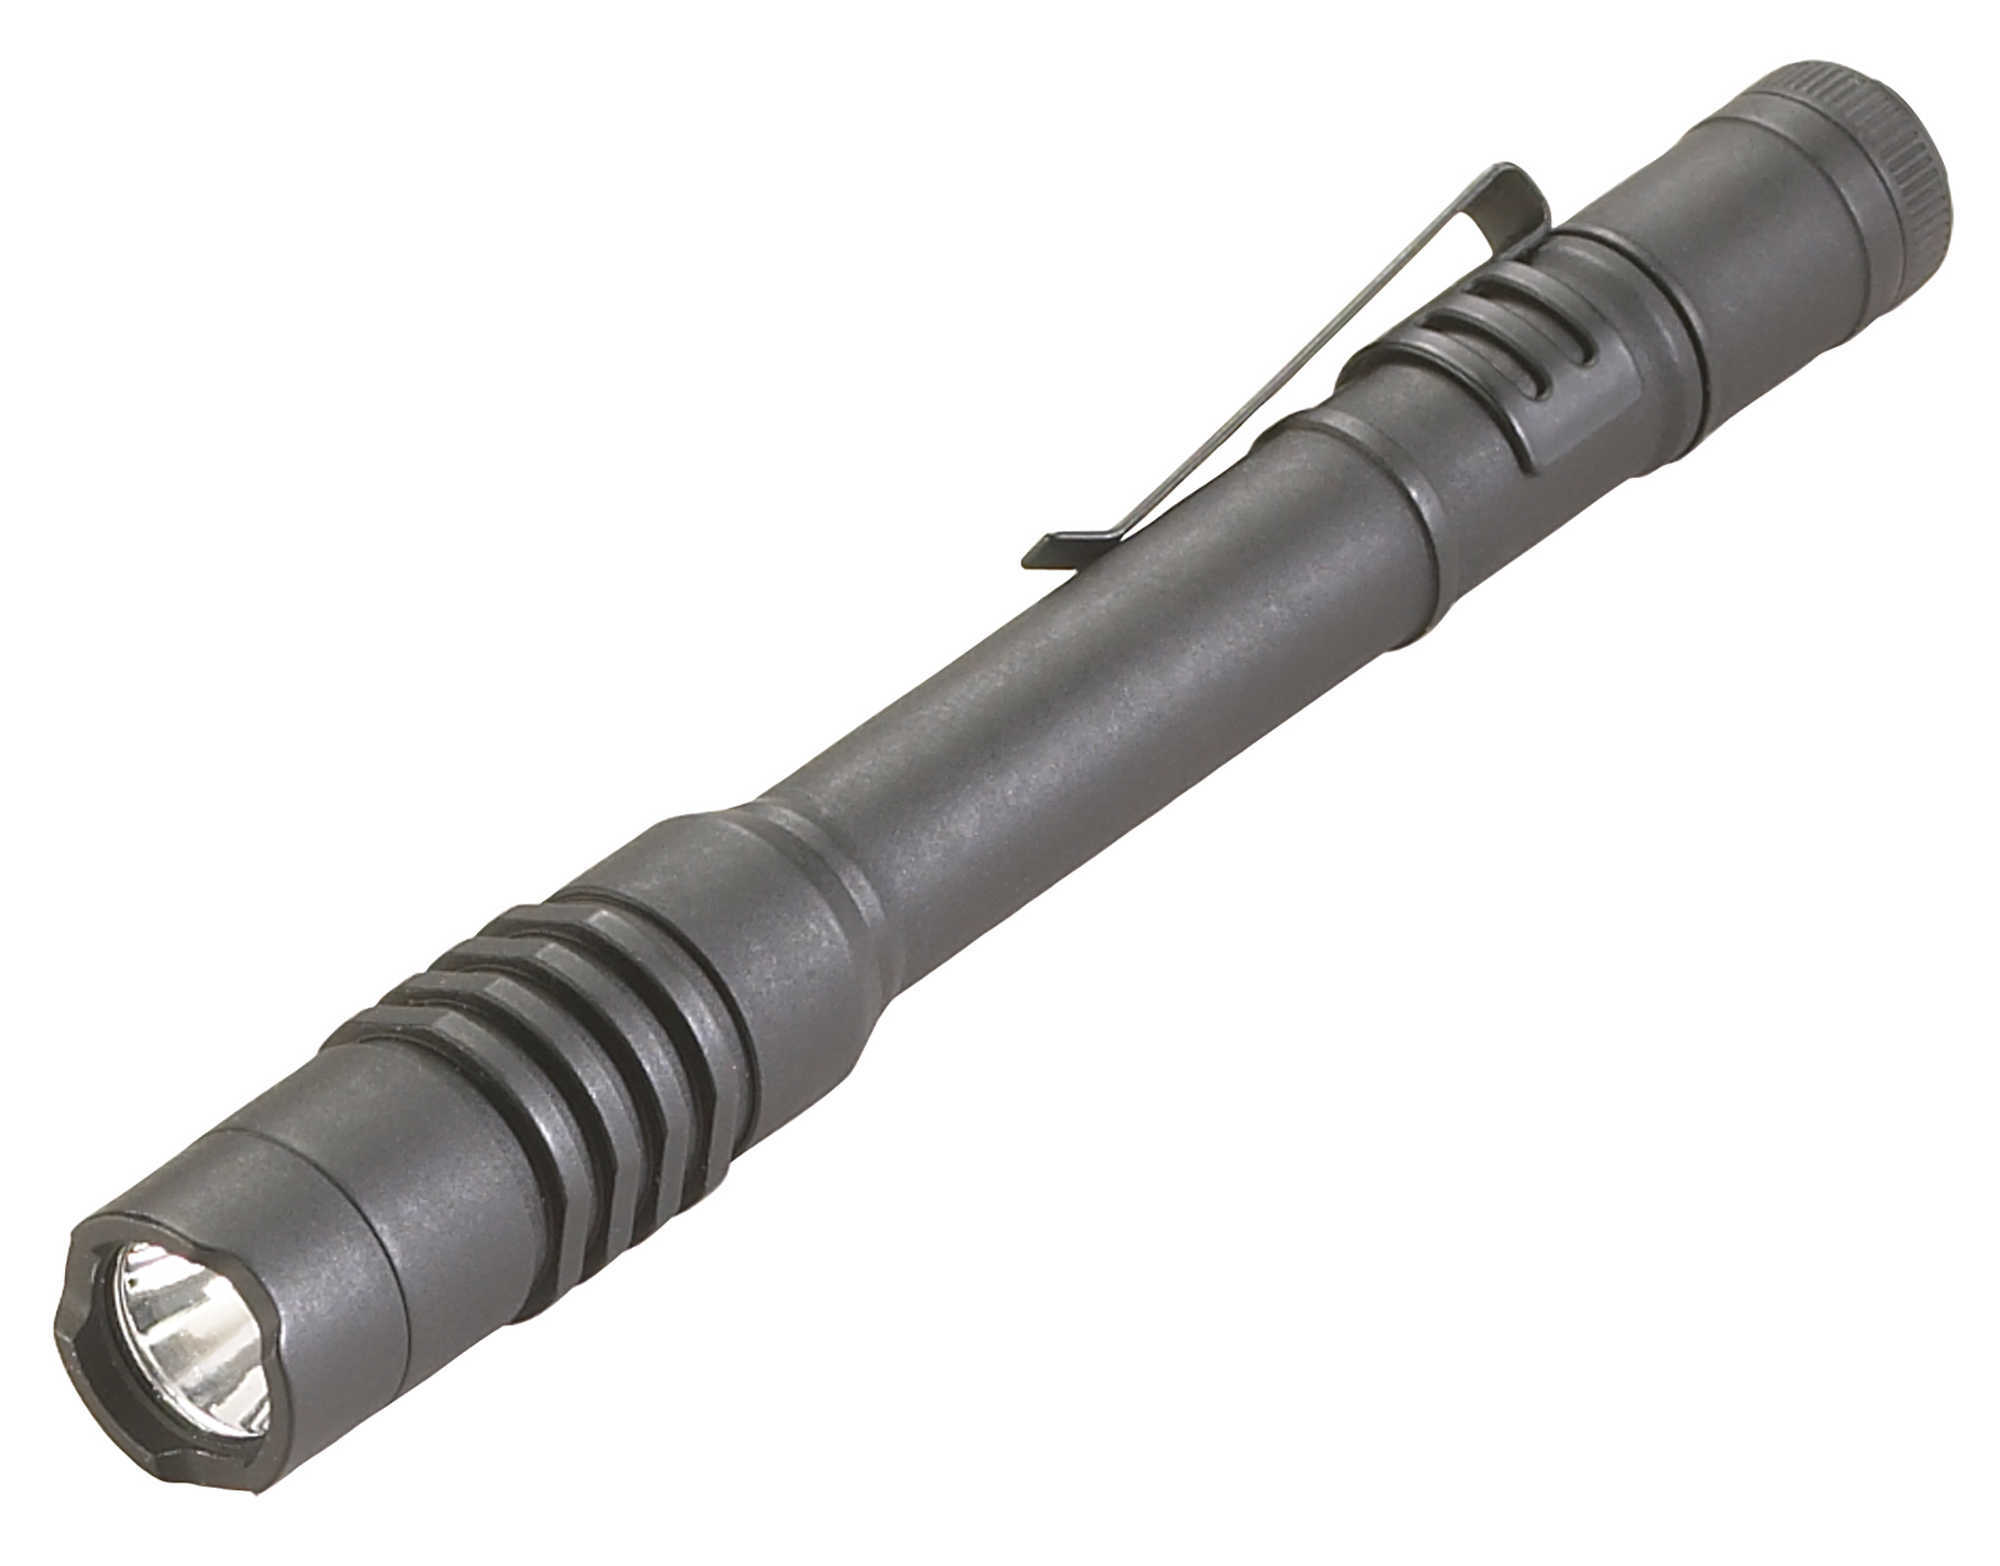 Streamlight 88039 ProTac 2AAA LED Flashlight 10/80 Lumens Aluminum Black